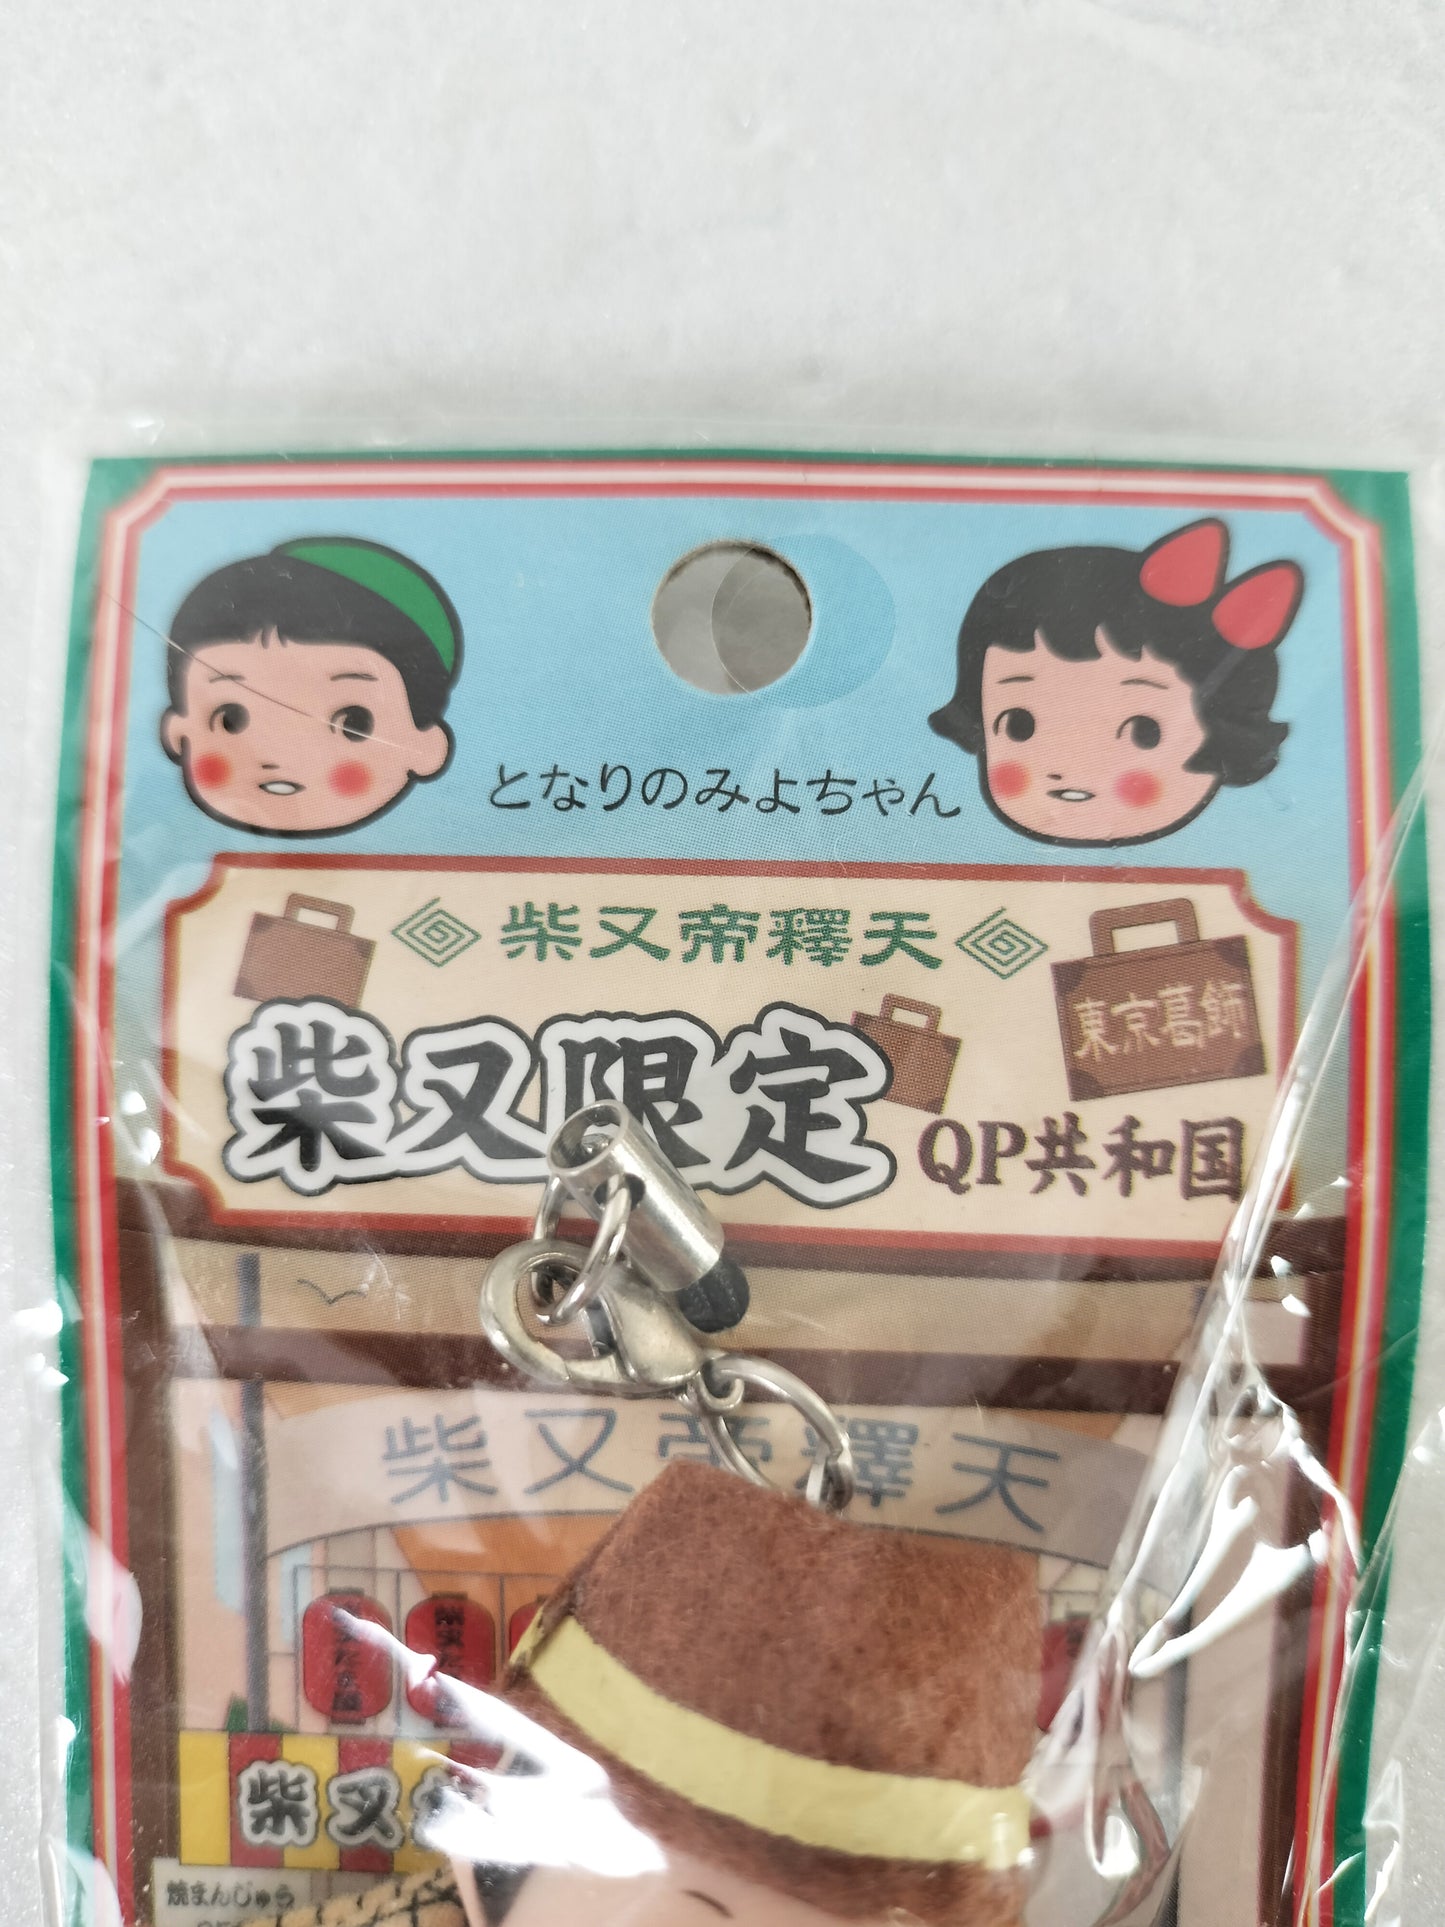 Kewpie Strap Tokyo KatsushikaVersion "Shibamata Limited Kewpie" vintage